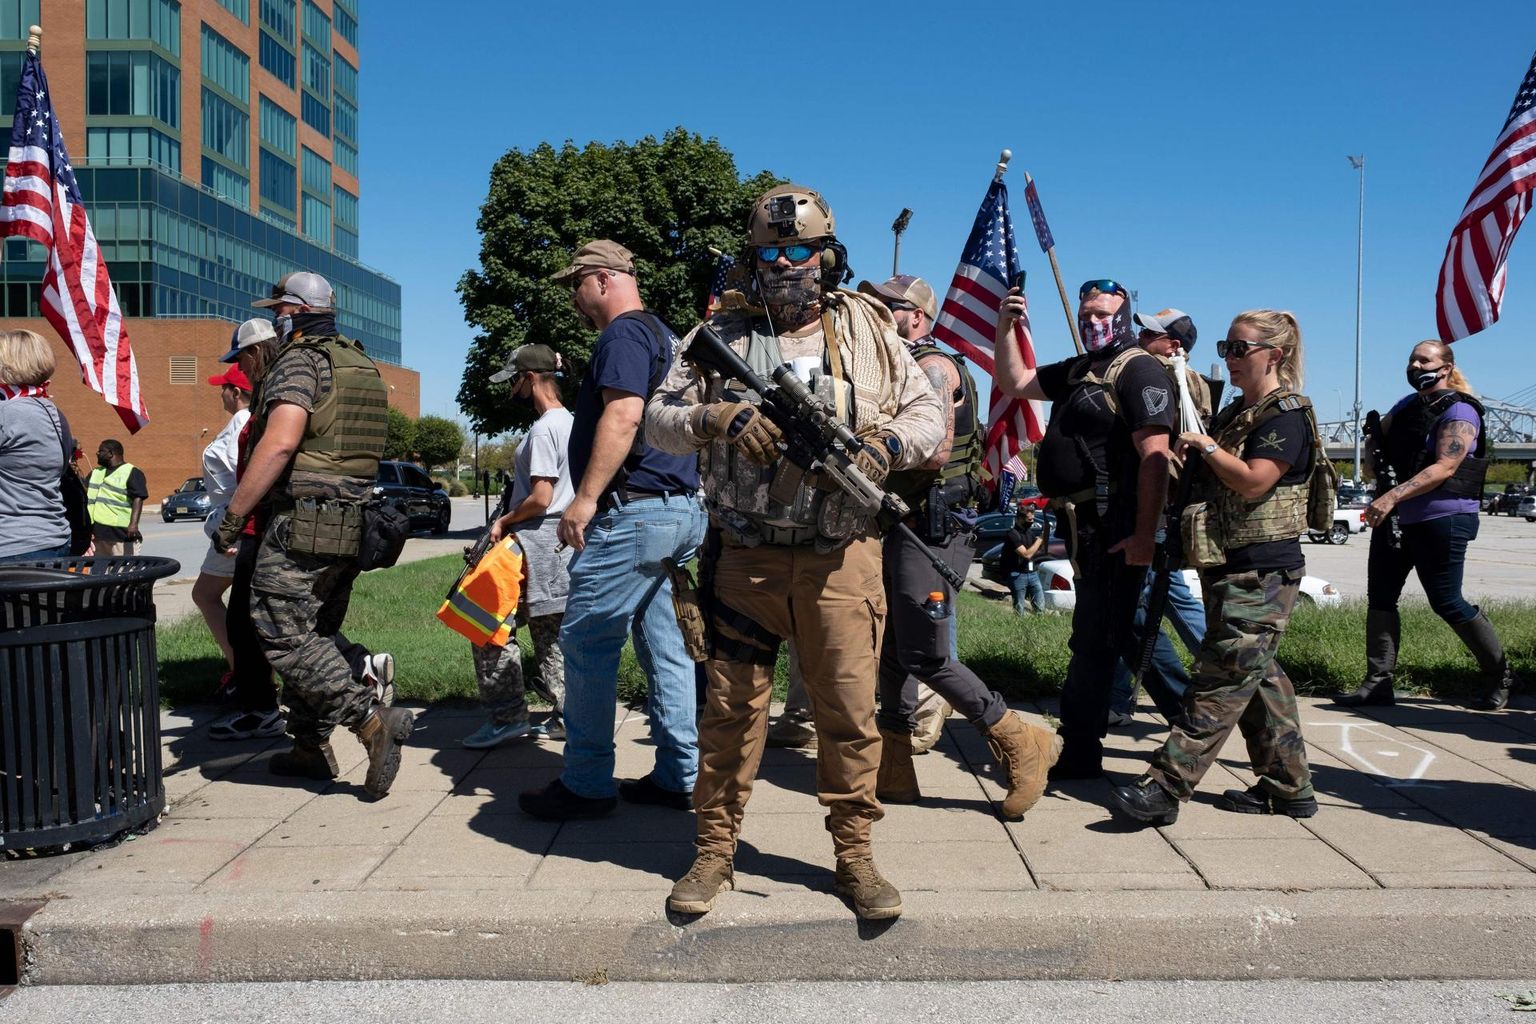 Louisville’i parempoolsed relvarühmitused marsil kohalike korrakaitsjate toetuseks. 